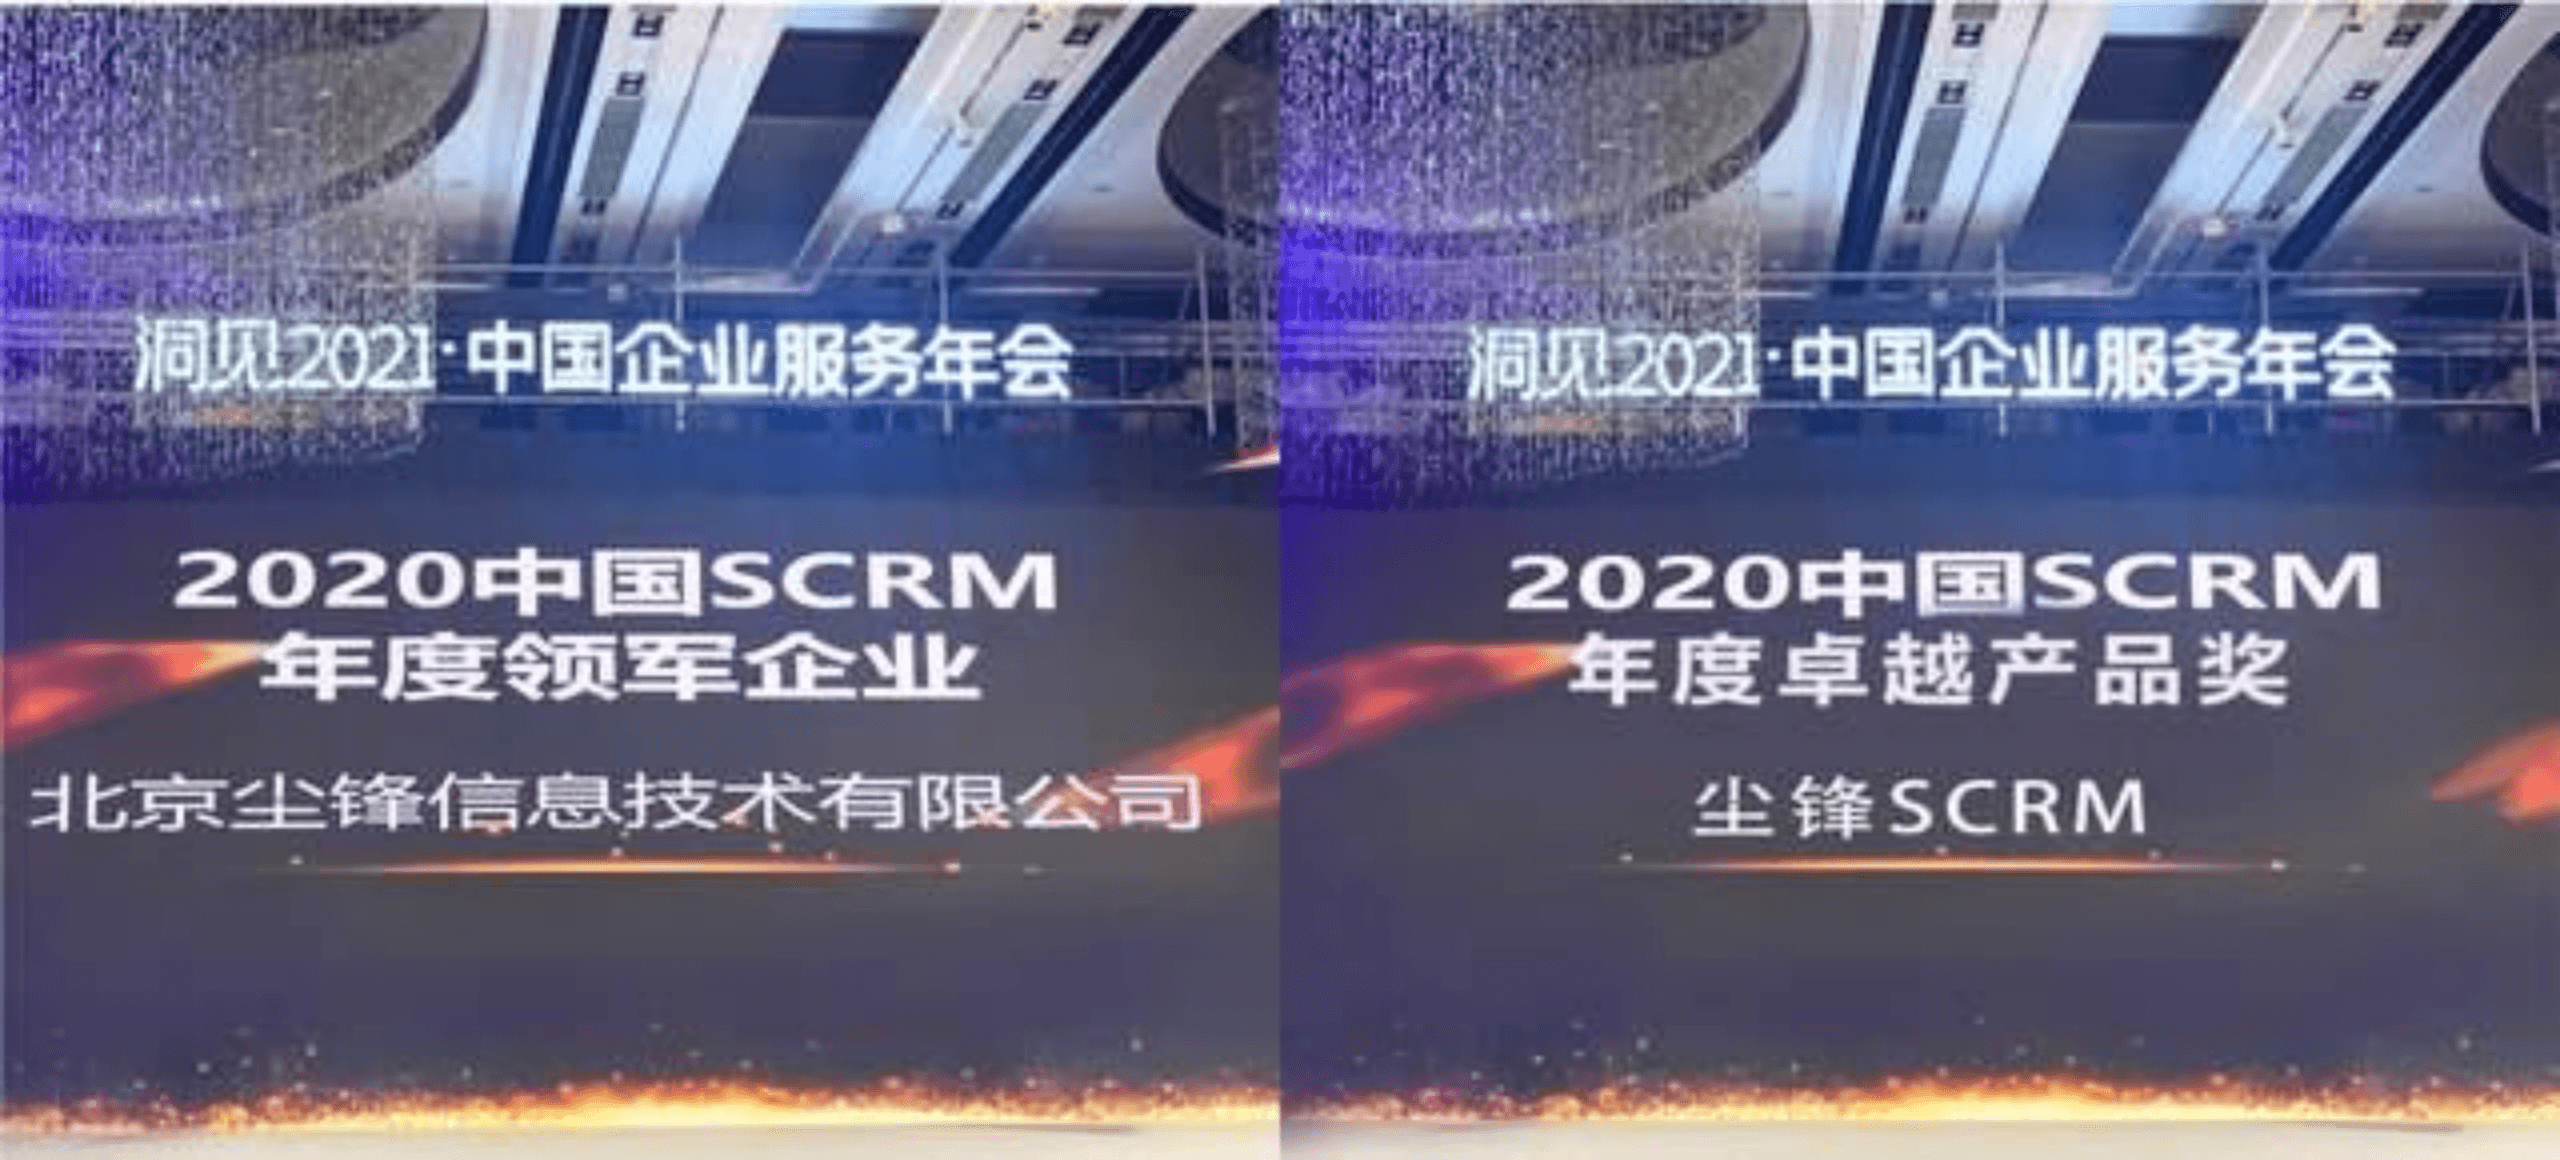 尘锋信息获评中国SCRM年度领军企业